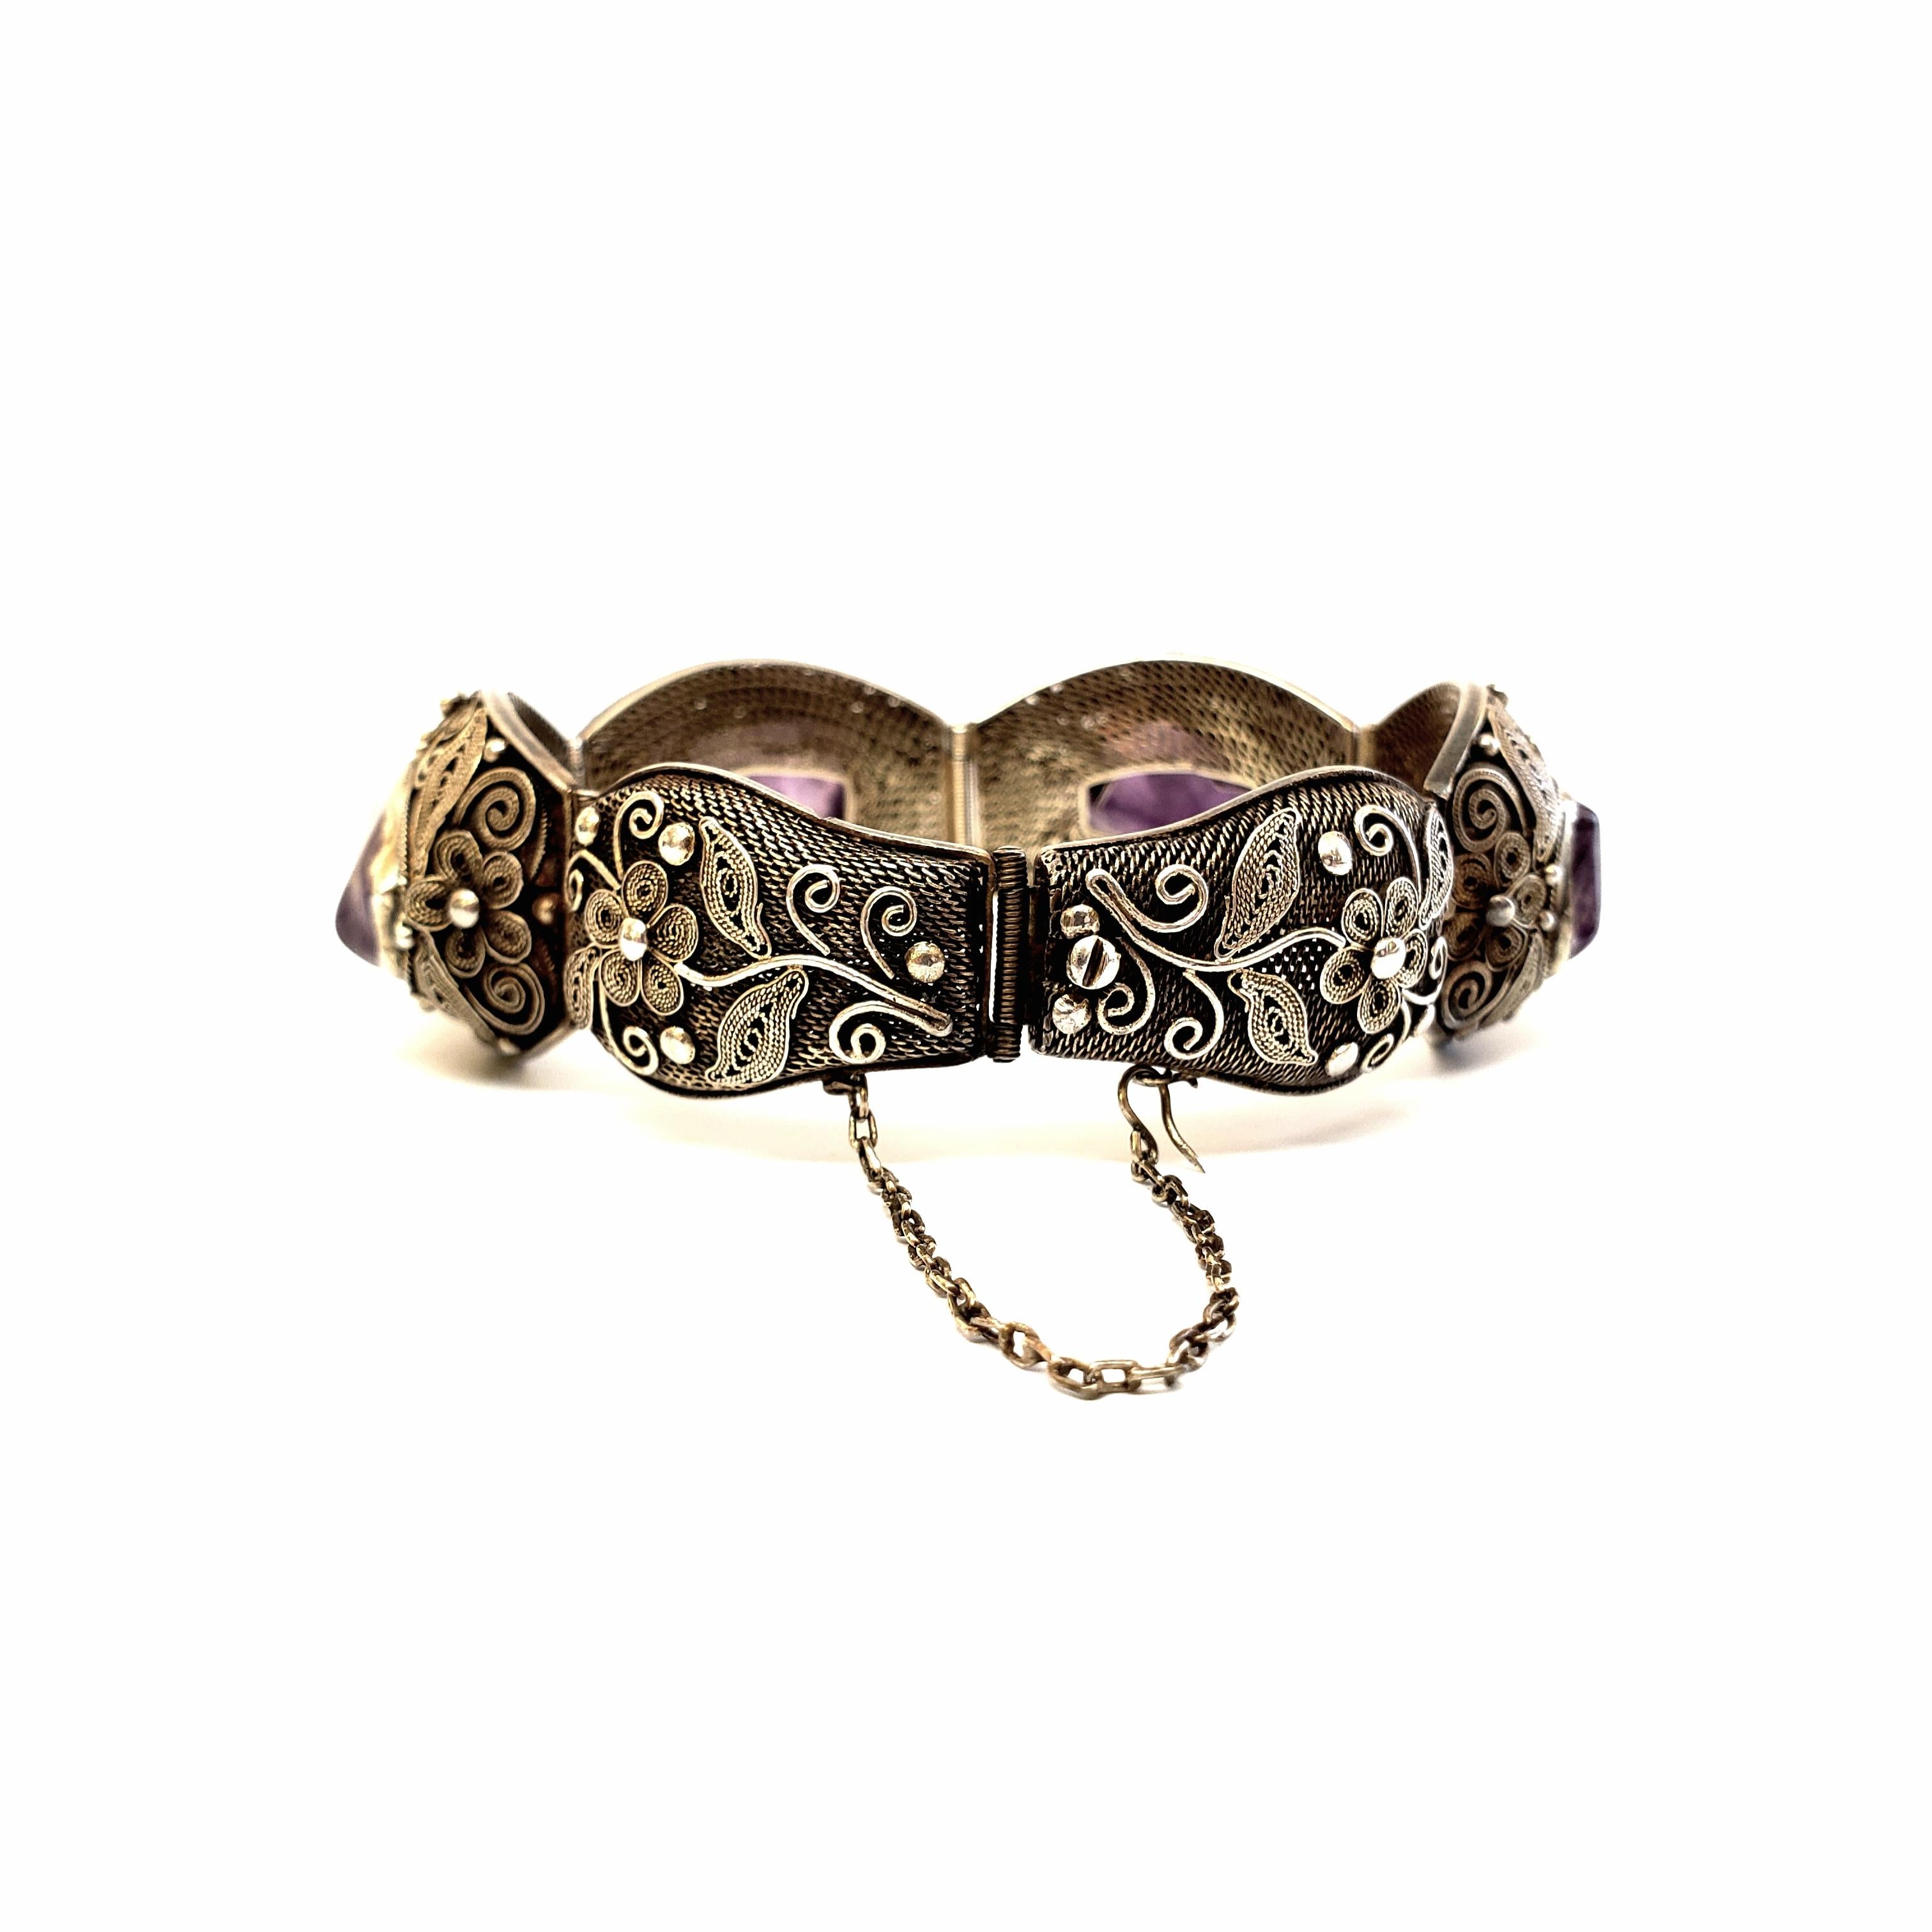 vintage bangle silver filigree bracelet with amethyst stones